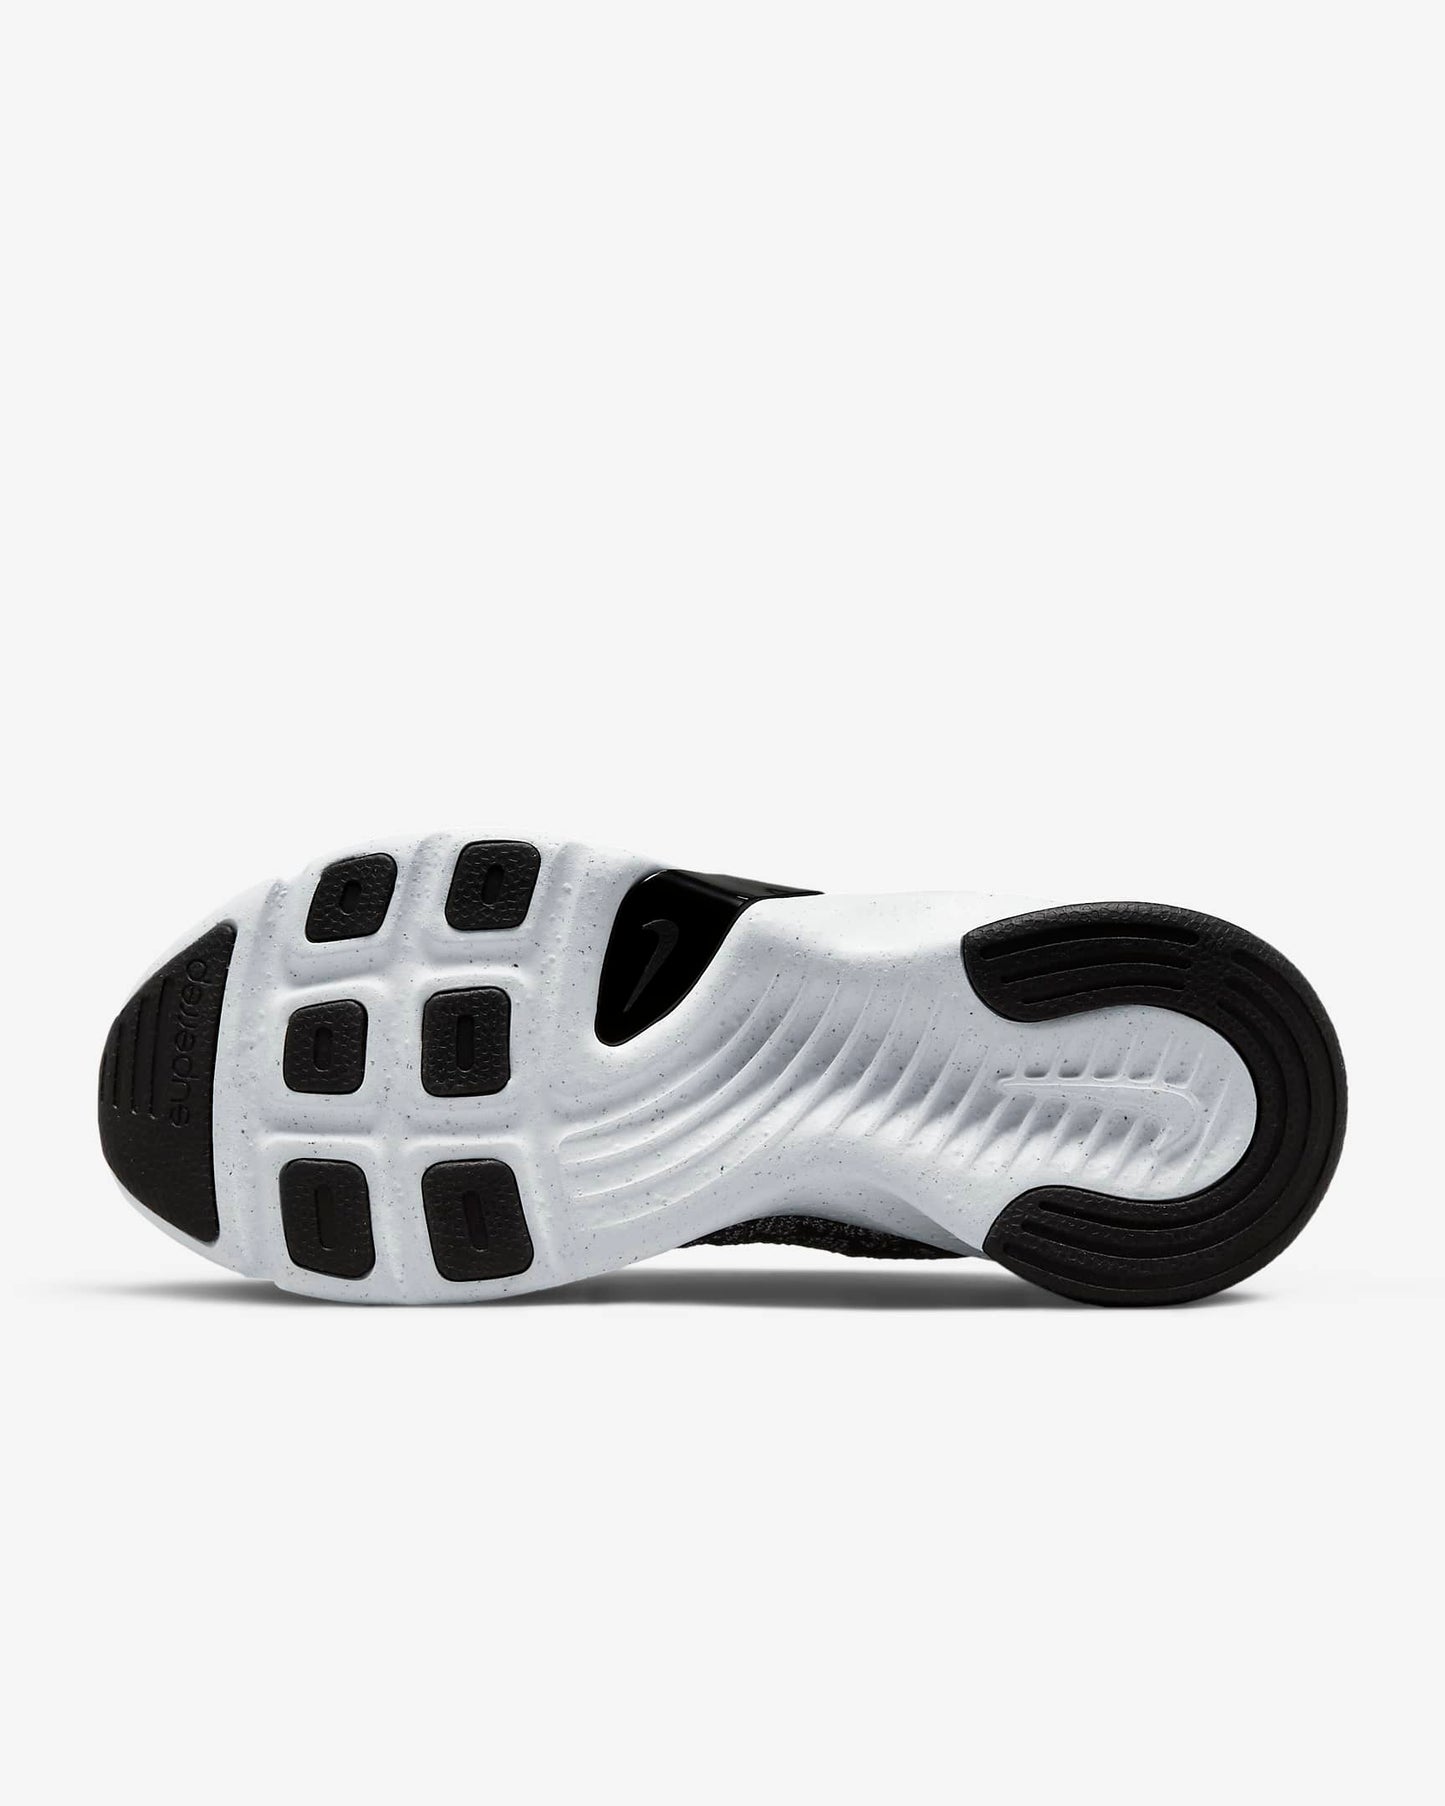 Nike SuperRep Go 3 Flyknit Next Nature, Black/White/Metallic Silver